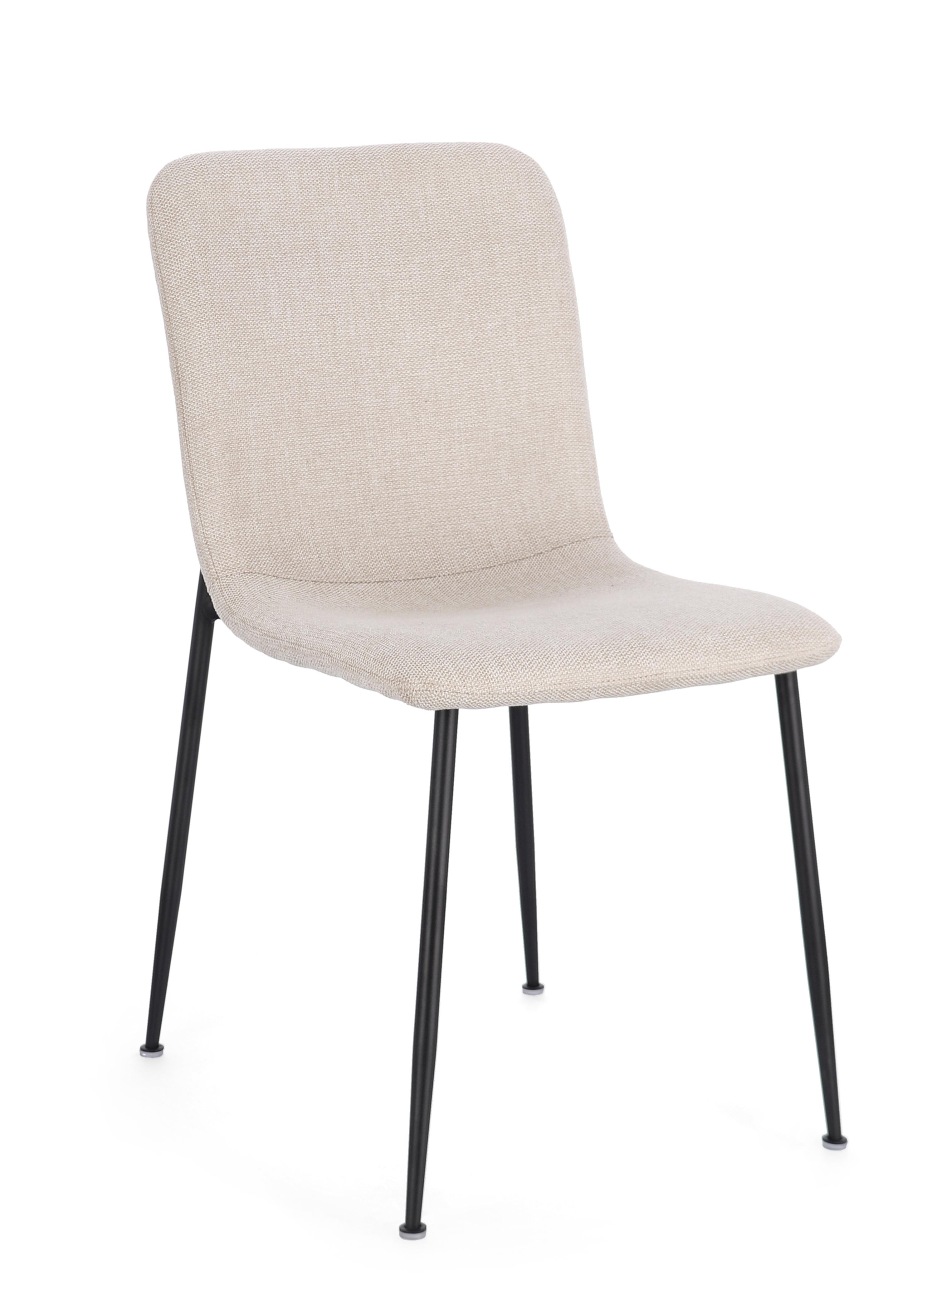 Der Esszimmerstuhl Rinas überzeugt mit seinem modernen Stil. Gefertigt wurde er aus Stoff, welcher einen Beigen Farbton besitzt. Das Gestell ist aus Metall und hat eine schwarze Farbe. Der Stuhl besitzt eine Sitzhöhe von 46 cm.